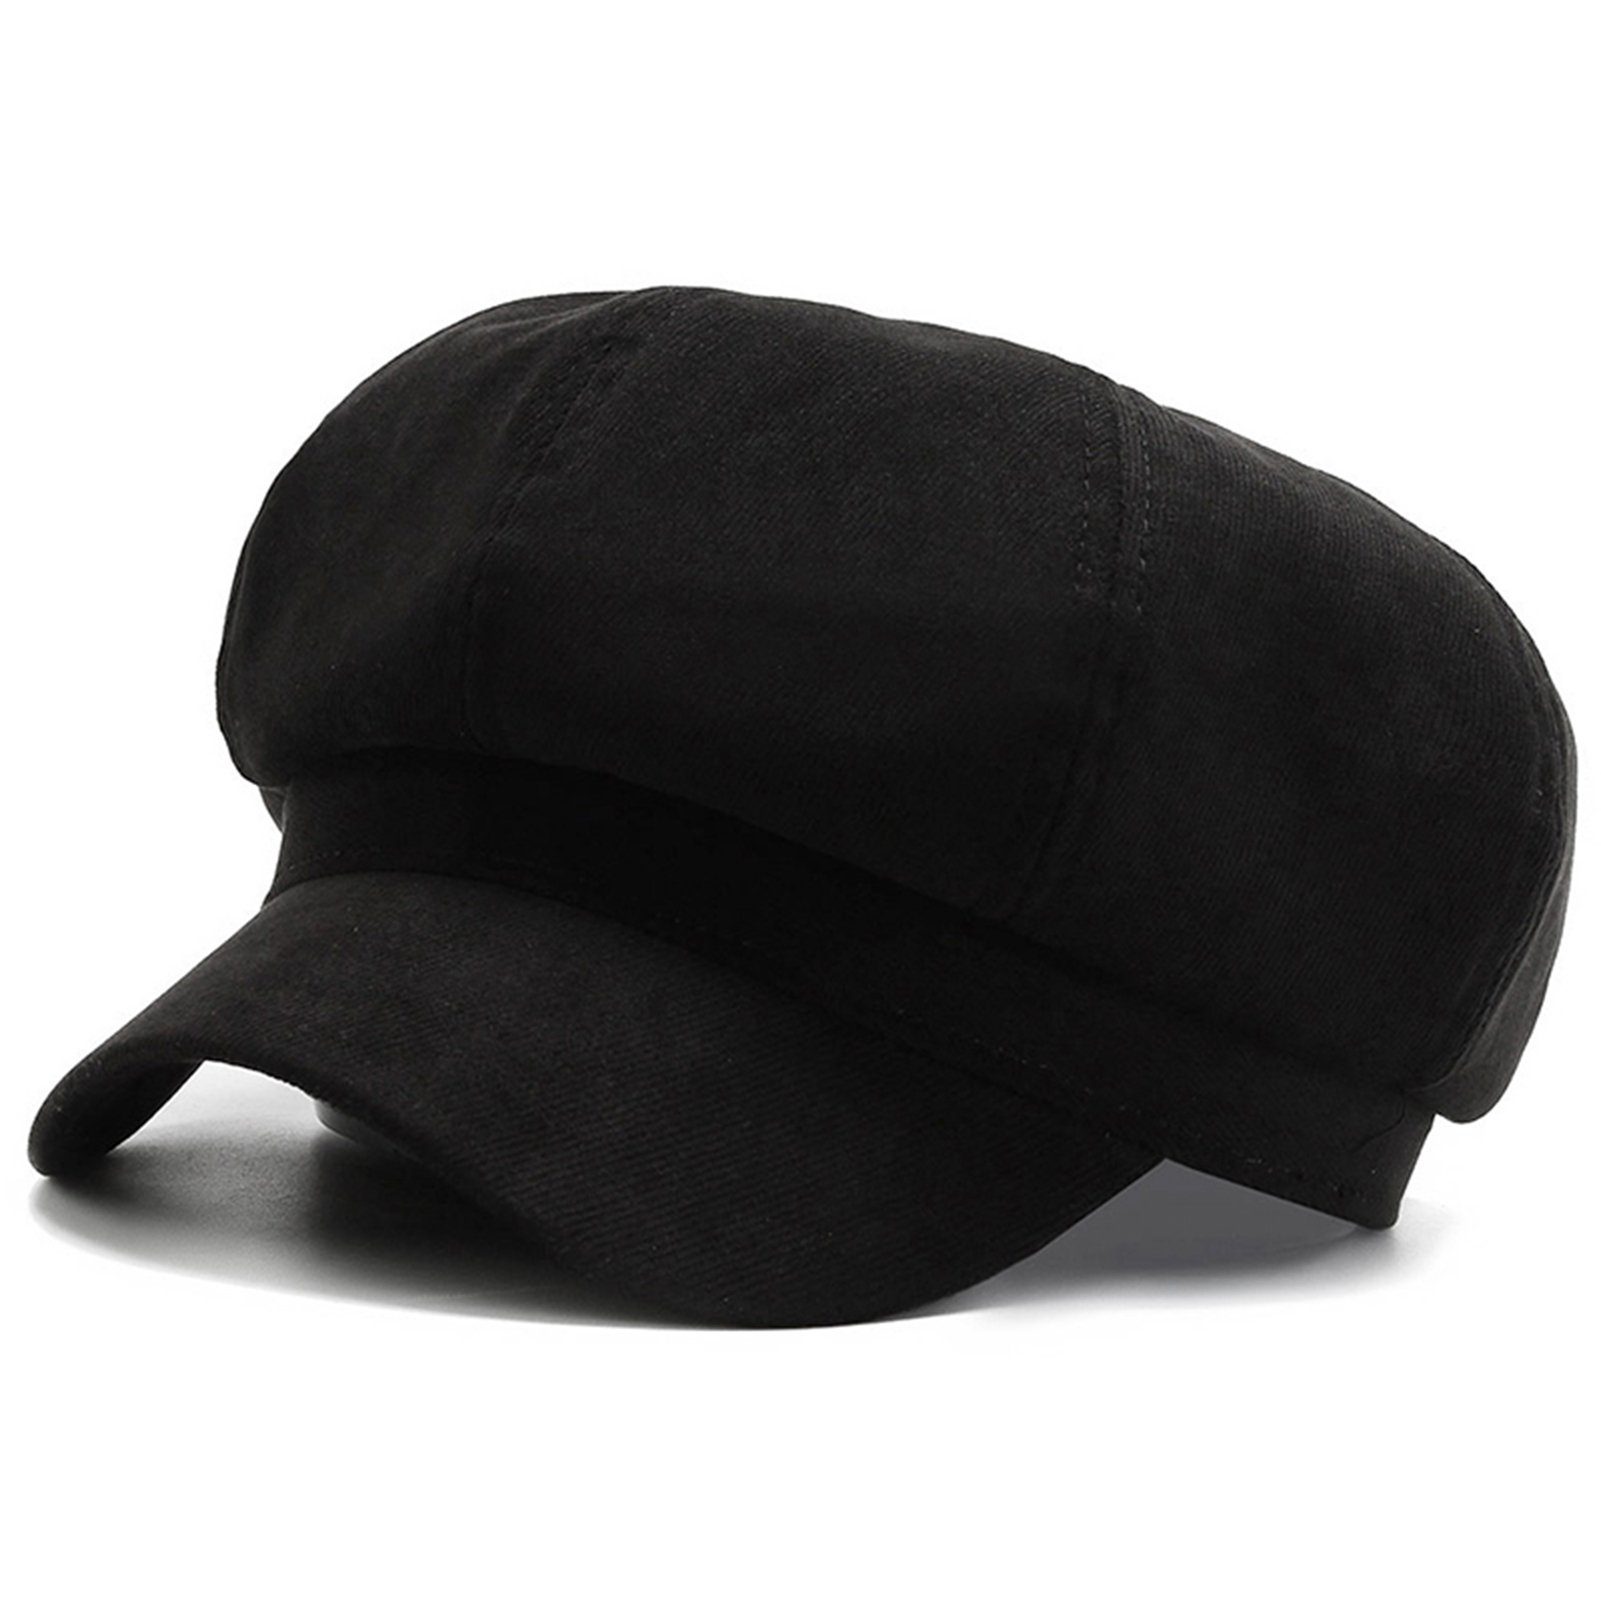 Blusmart Modischer Baskenmütze Hut, Schwarz Mehrzweck-Freizeit-Baskenmütze, Tragbar